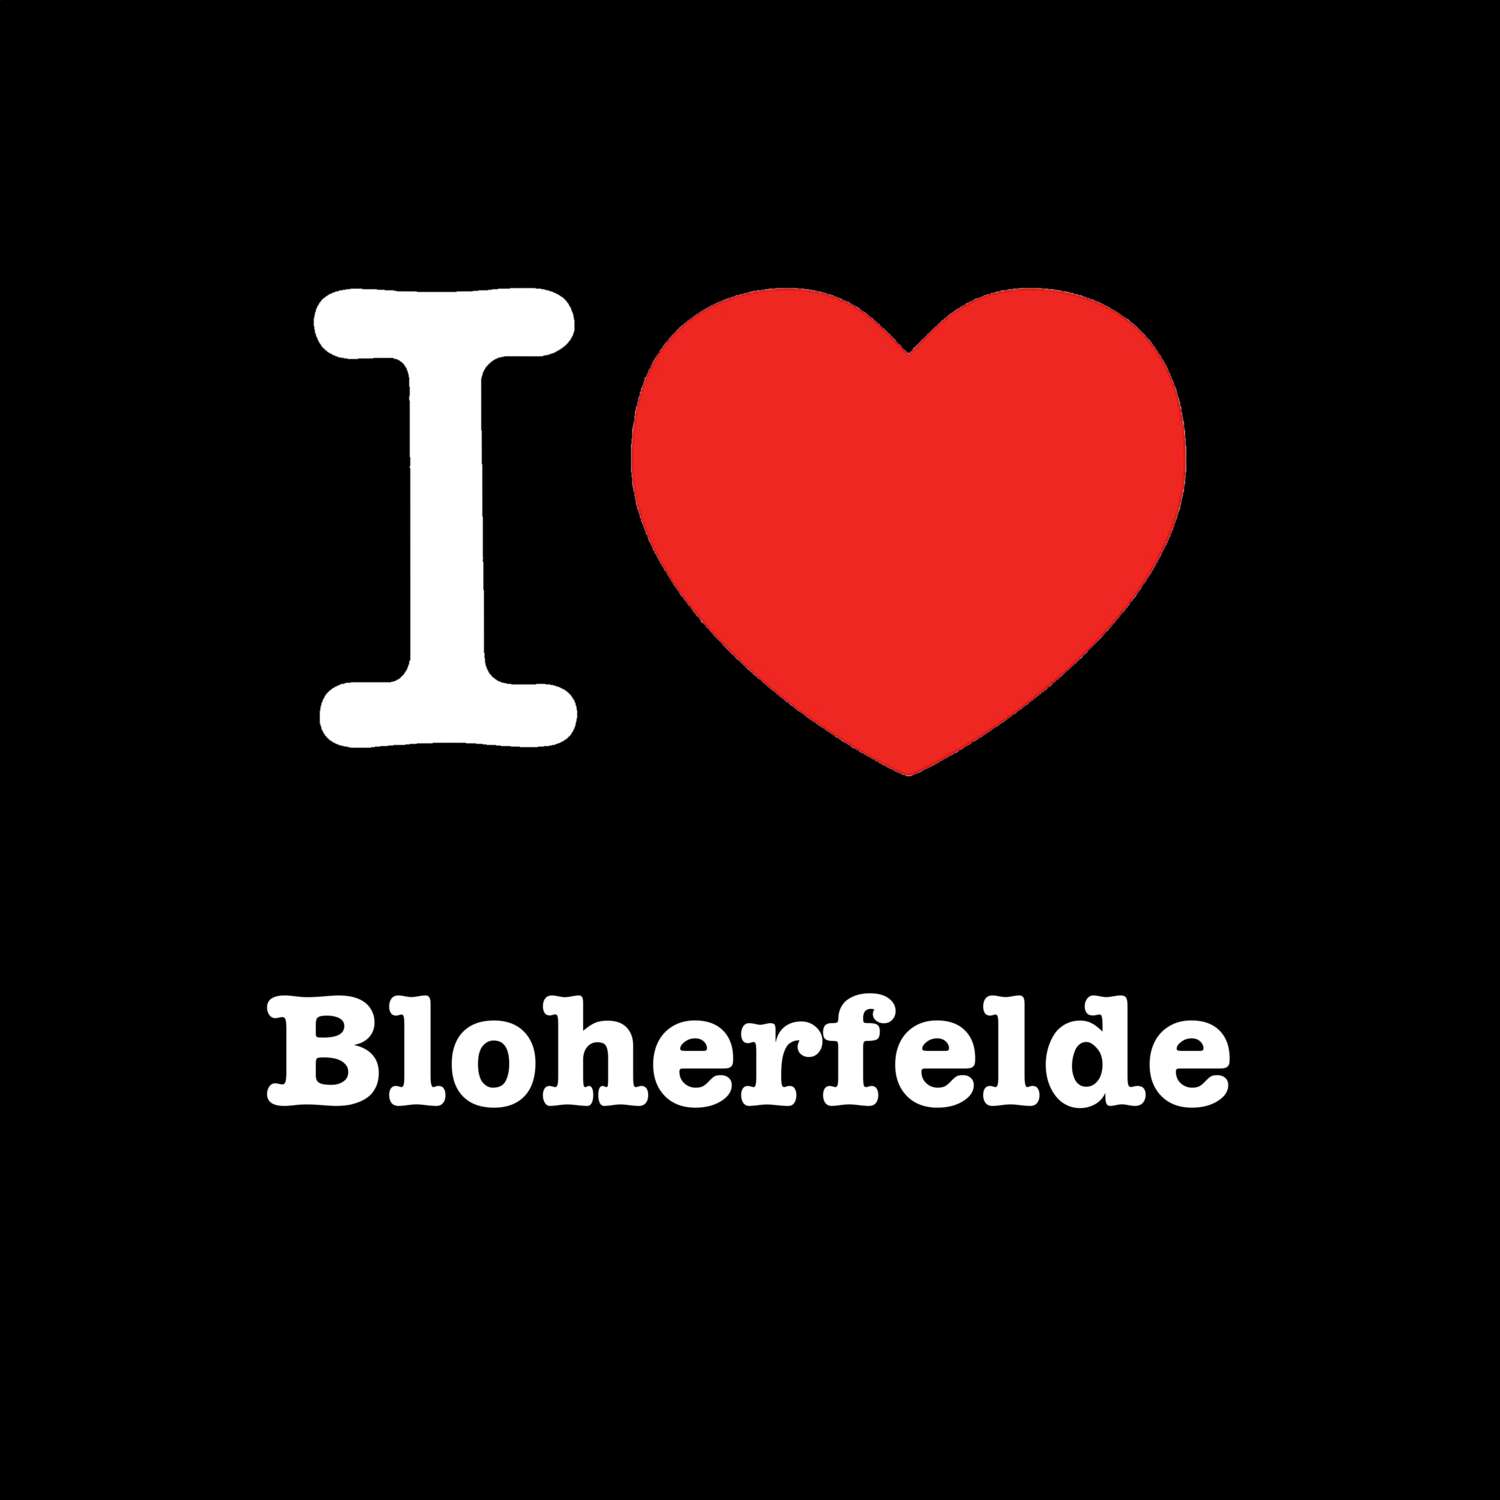 Bloherfelde T-Shirt »I love«